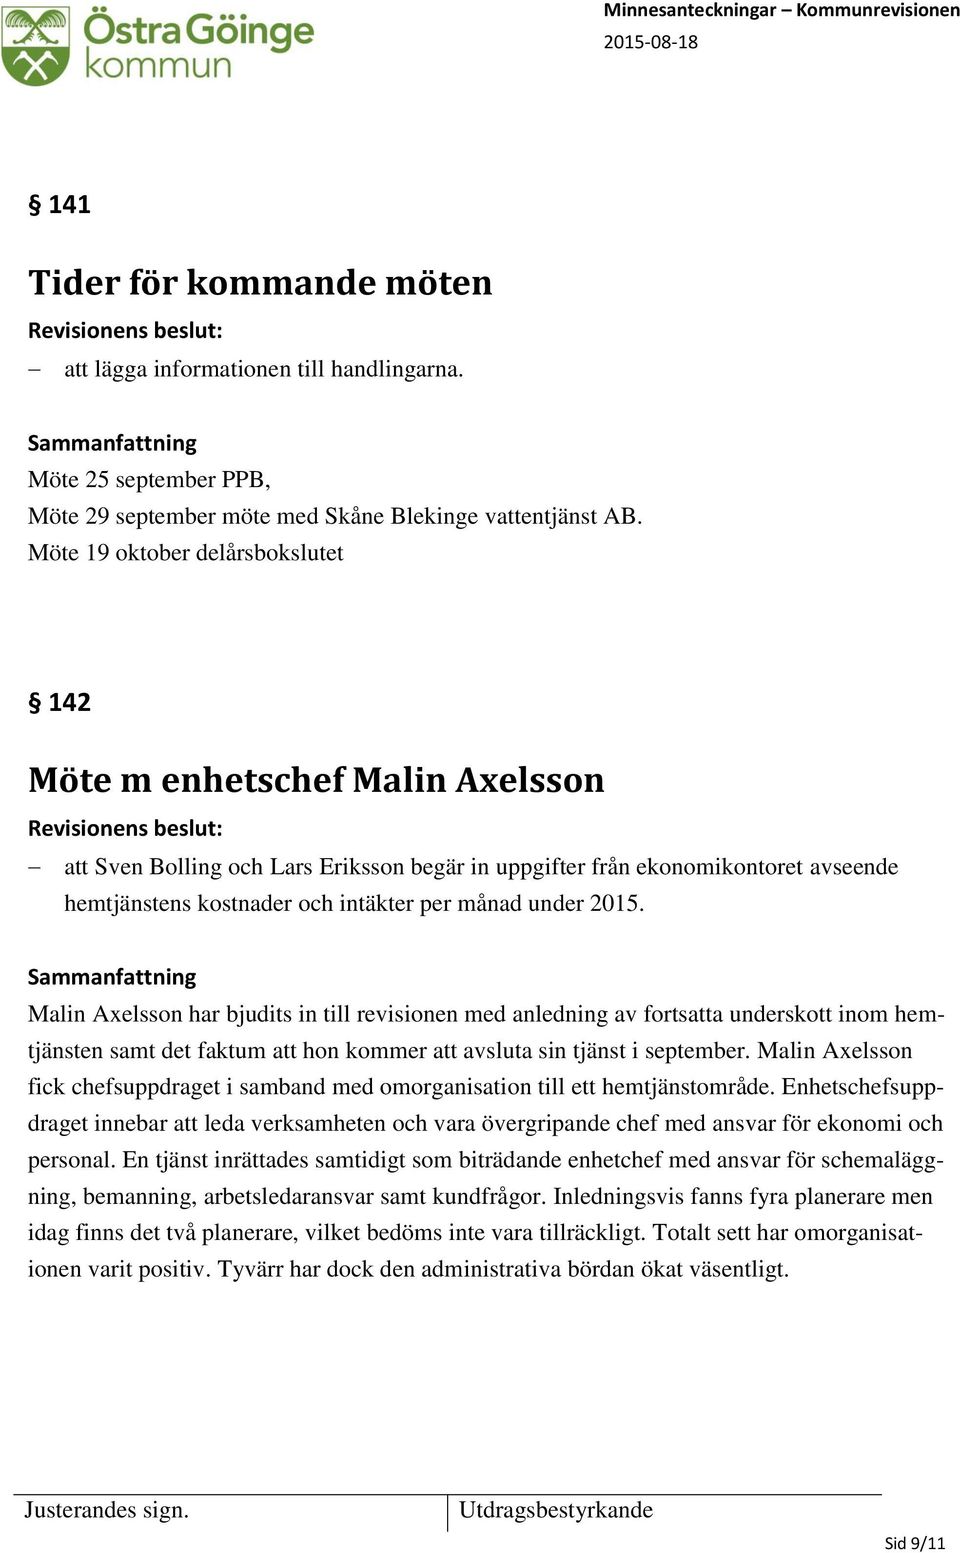 under 2015. Malin Axelsson har bjudits in till revisionen med anledning av fortsatta underskott inom hemtjänsten samt det faktum att hon kommer att avsluta sin tjänst i september.